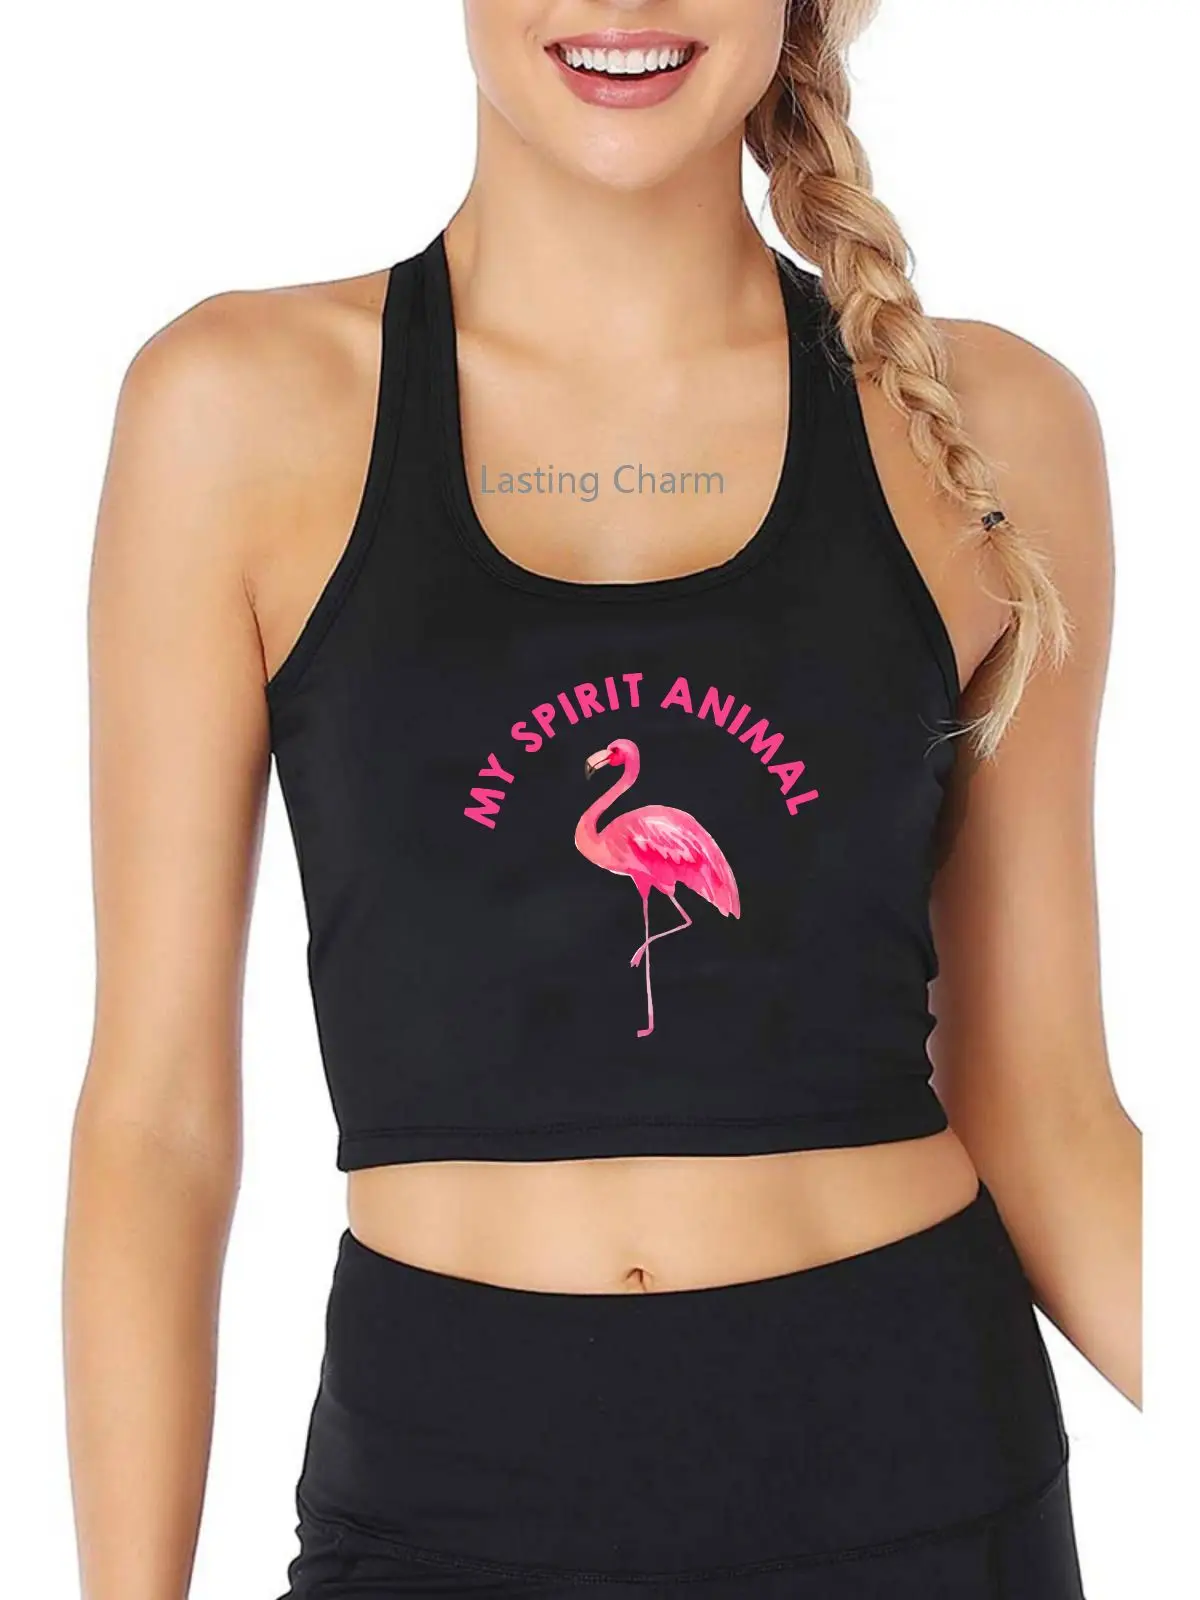 

Майка с принтом фламинго, милый топ с животным принтом для любителей йоги, занятий спортом